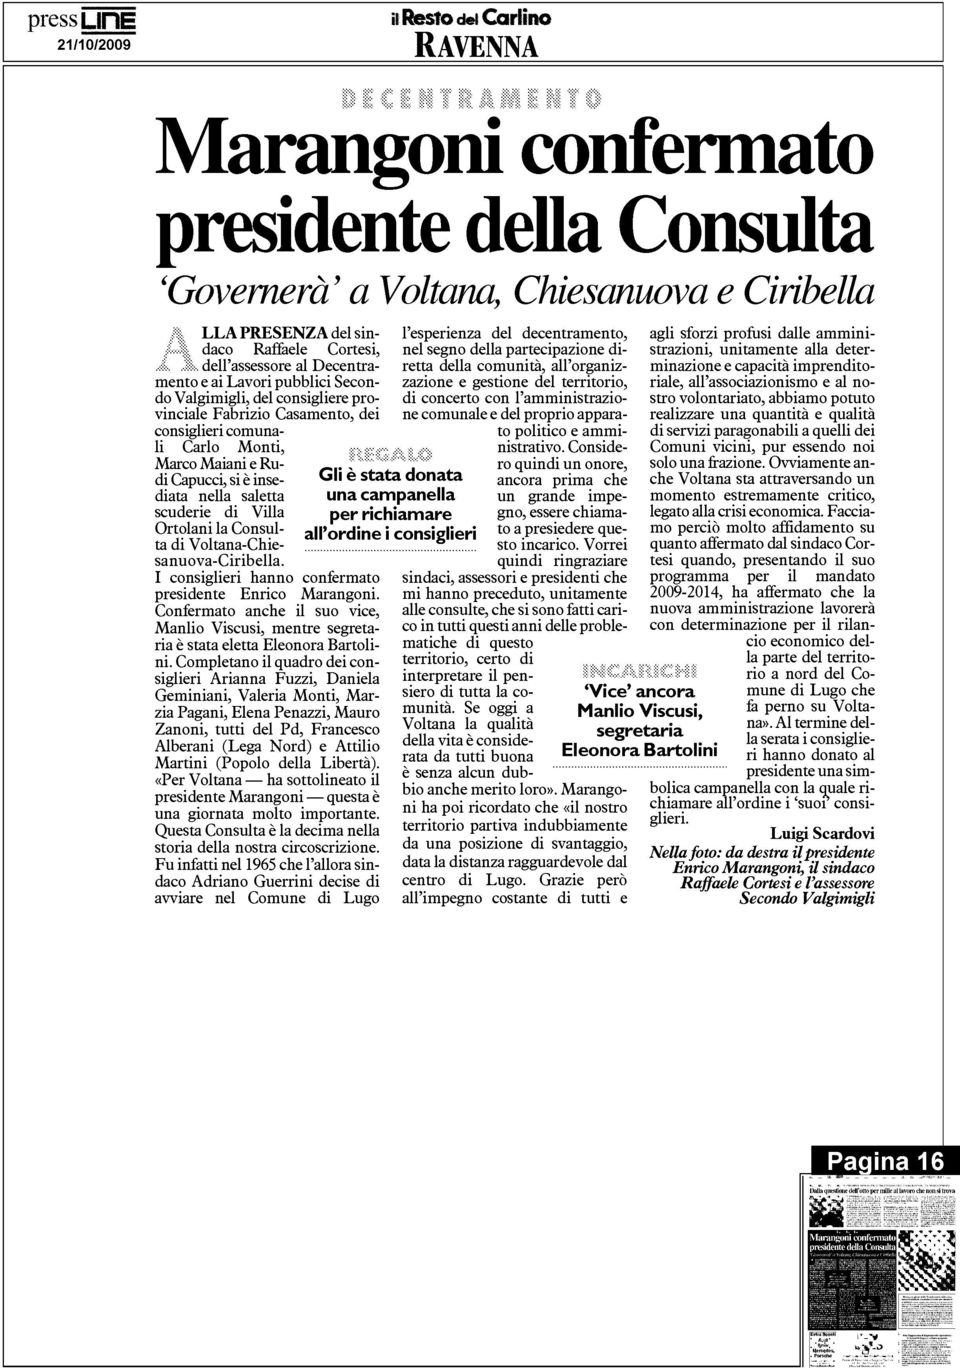 insediata nella saletta scuderie di Vill a Ortolani la Consulta di Voltana-Chiesanuova-Ciribella. I consiglieri hanno confermat o presidente Enrico Marangoni.